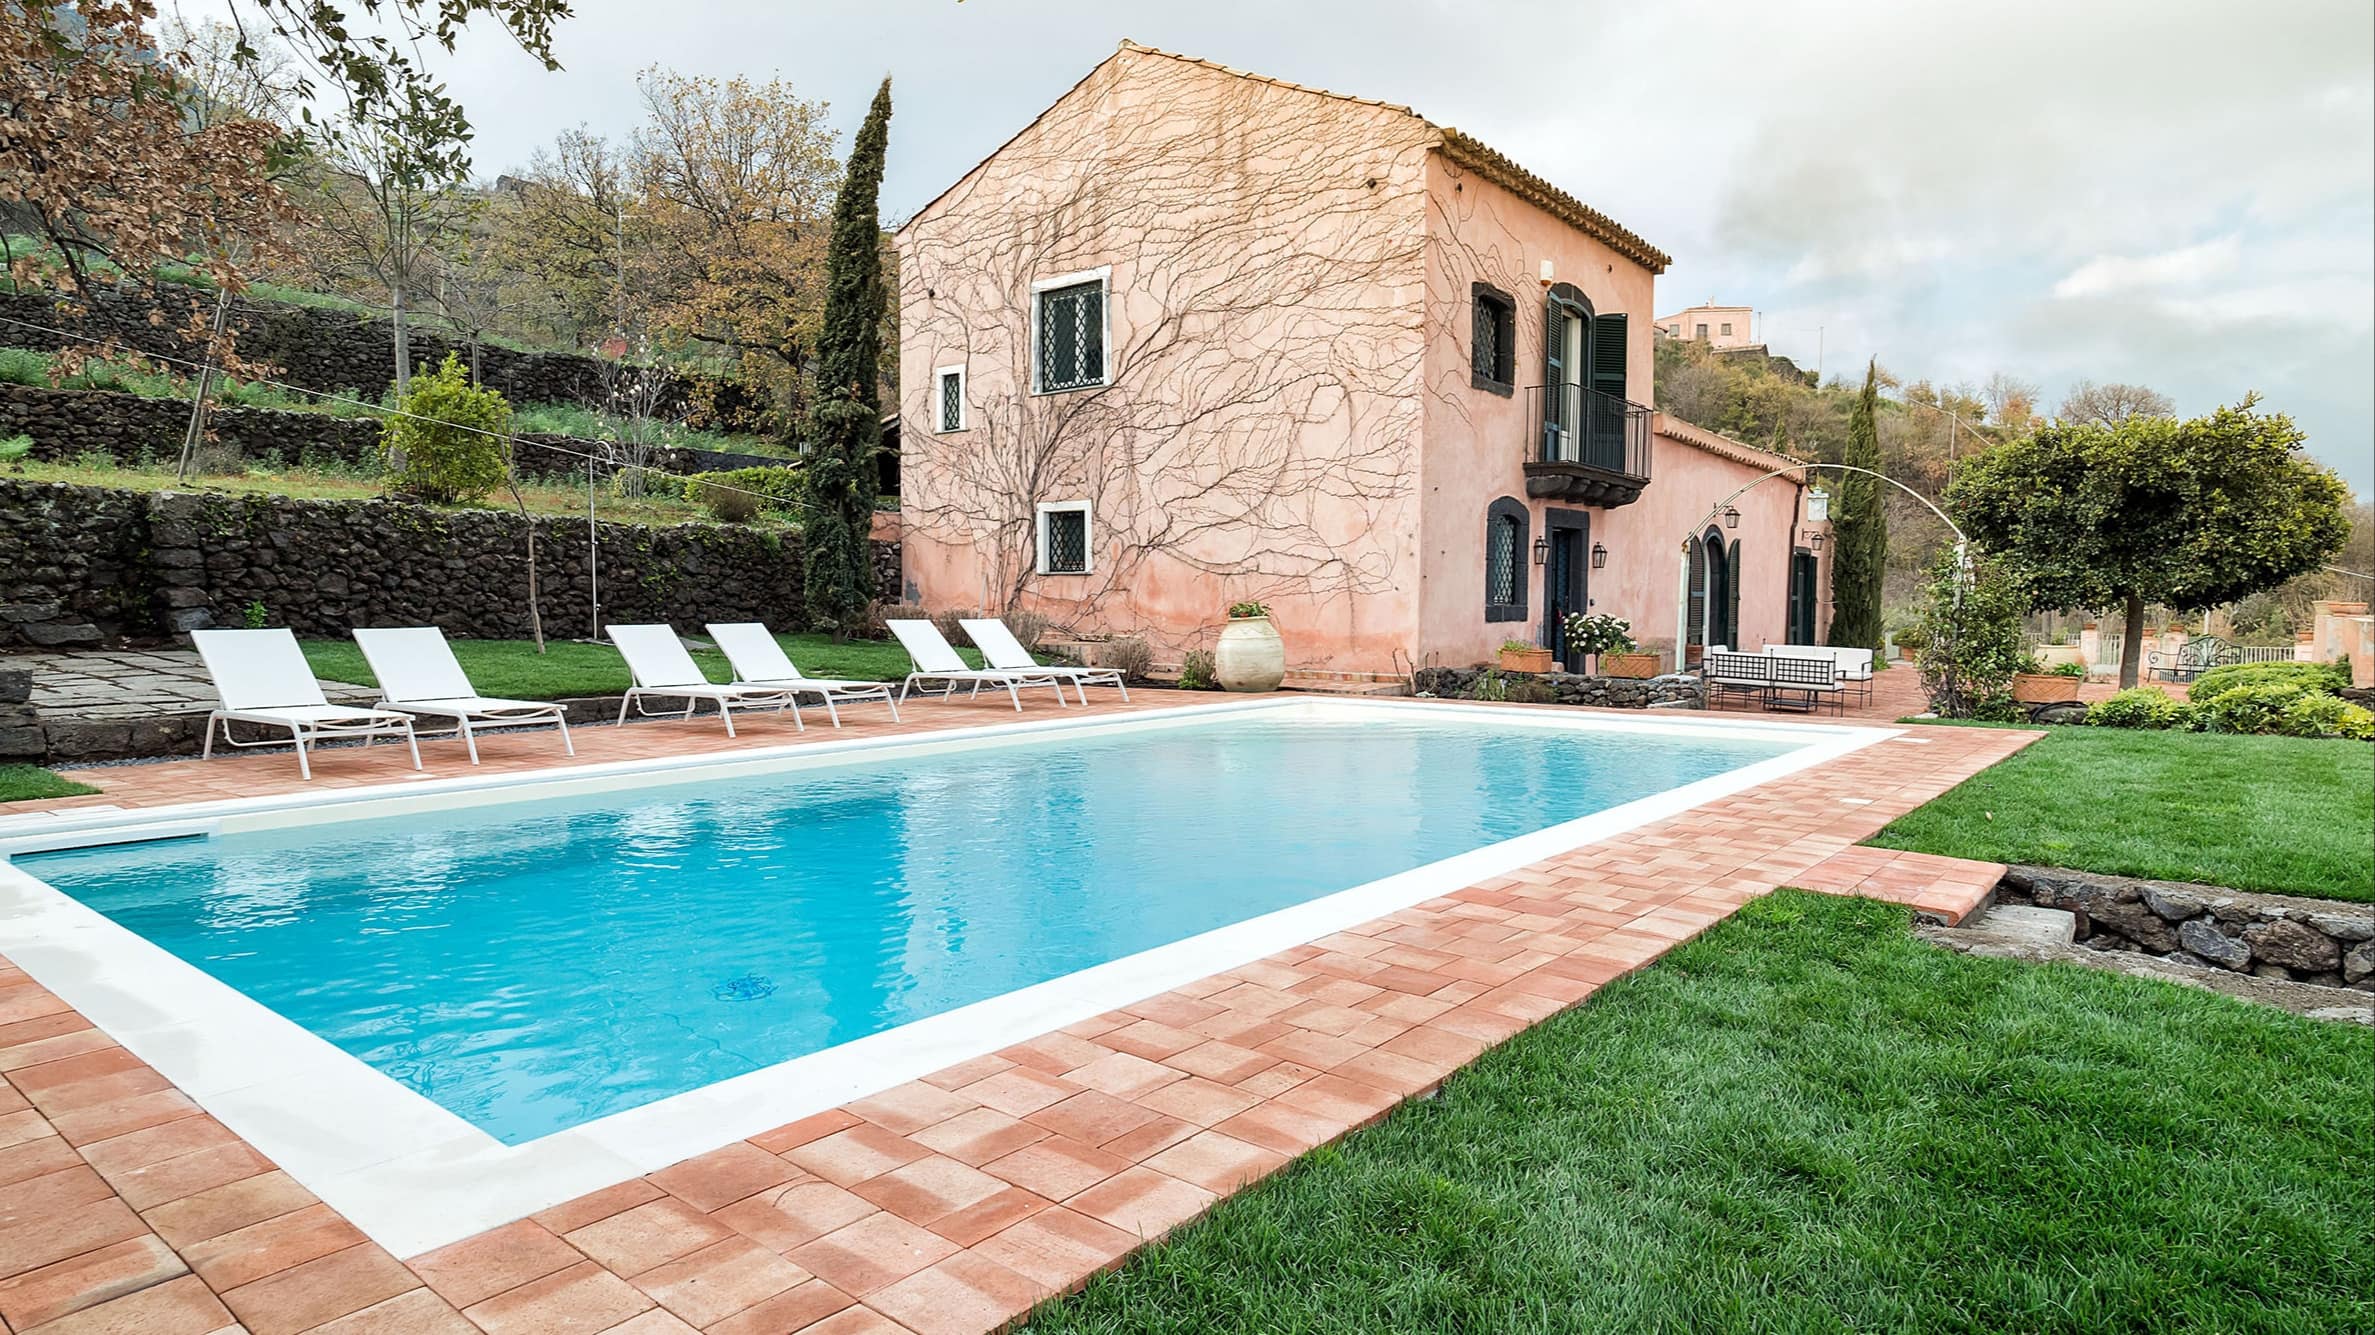 Ferienhäuser in Italien mit Pool – der perfekte Sommerurlaub